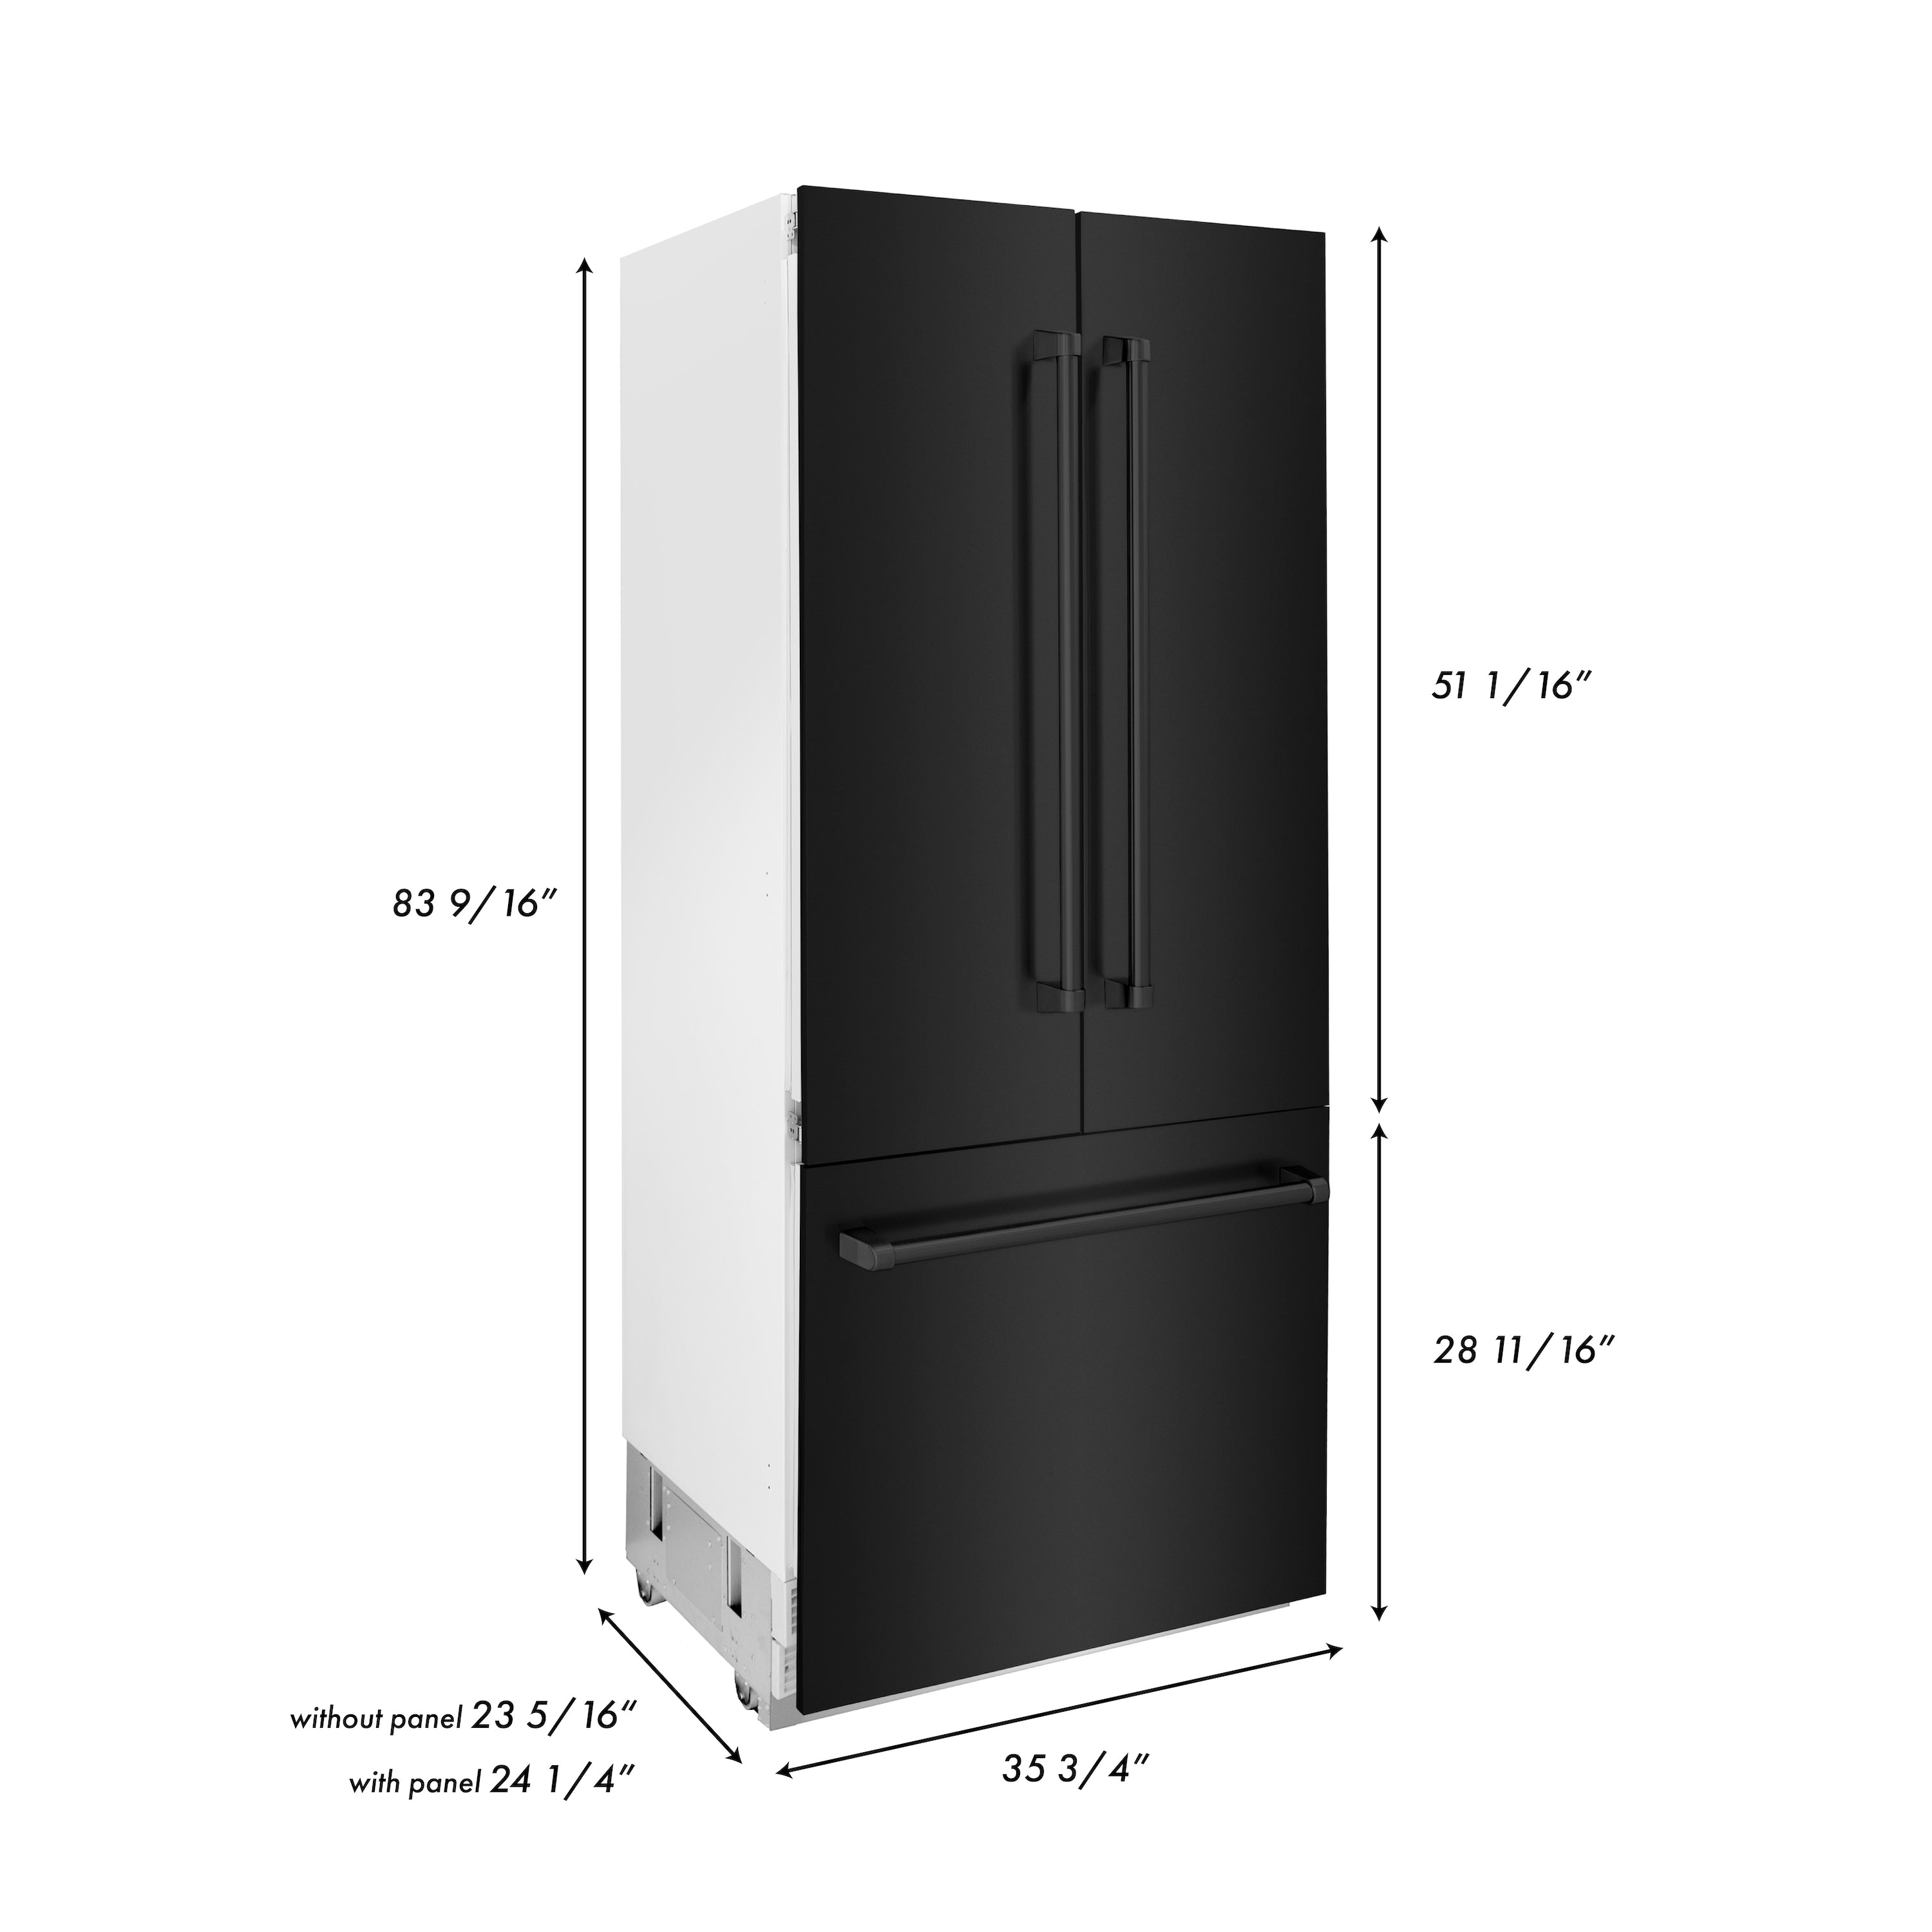 ZLINE 36" 19.6 cu. ft. Built-In 3-Door French Door Freezer Refrigerator with Internal Water and Ice Dispenser in Black Stainless Steel (RBIV-BS-36)